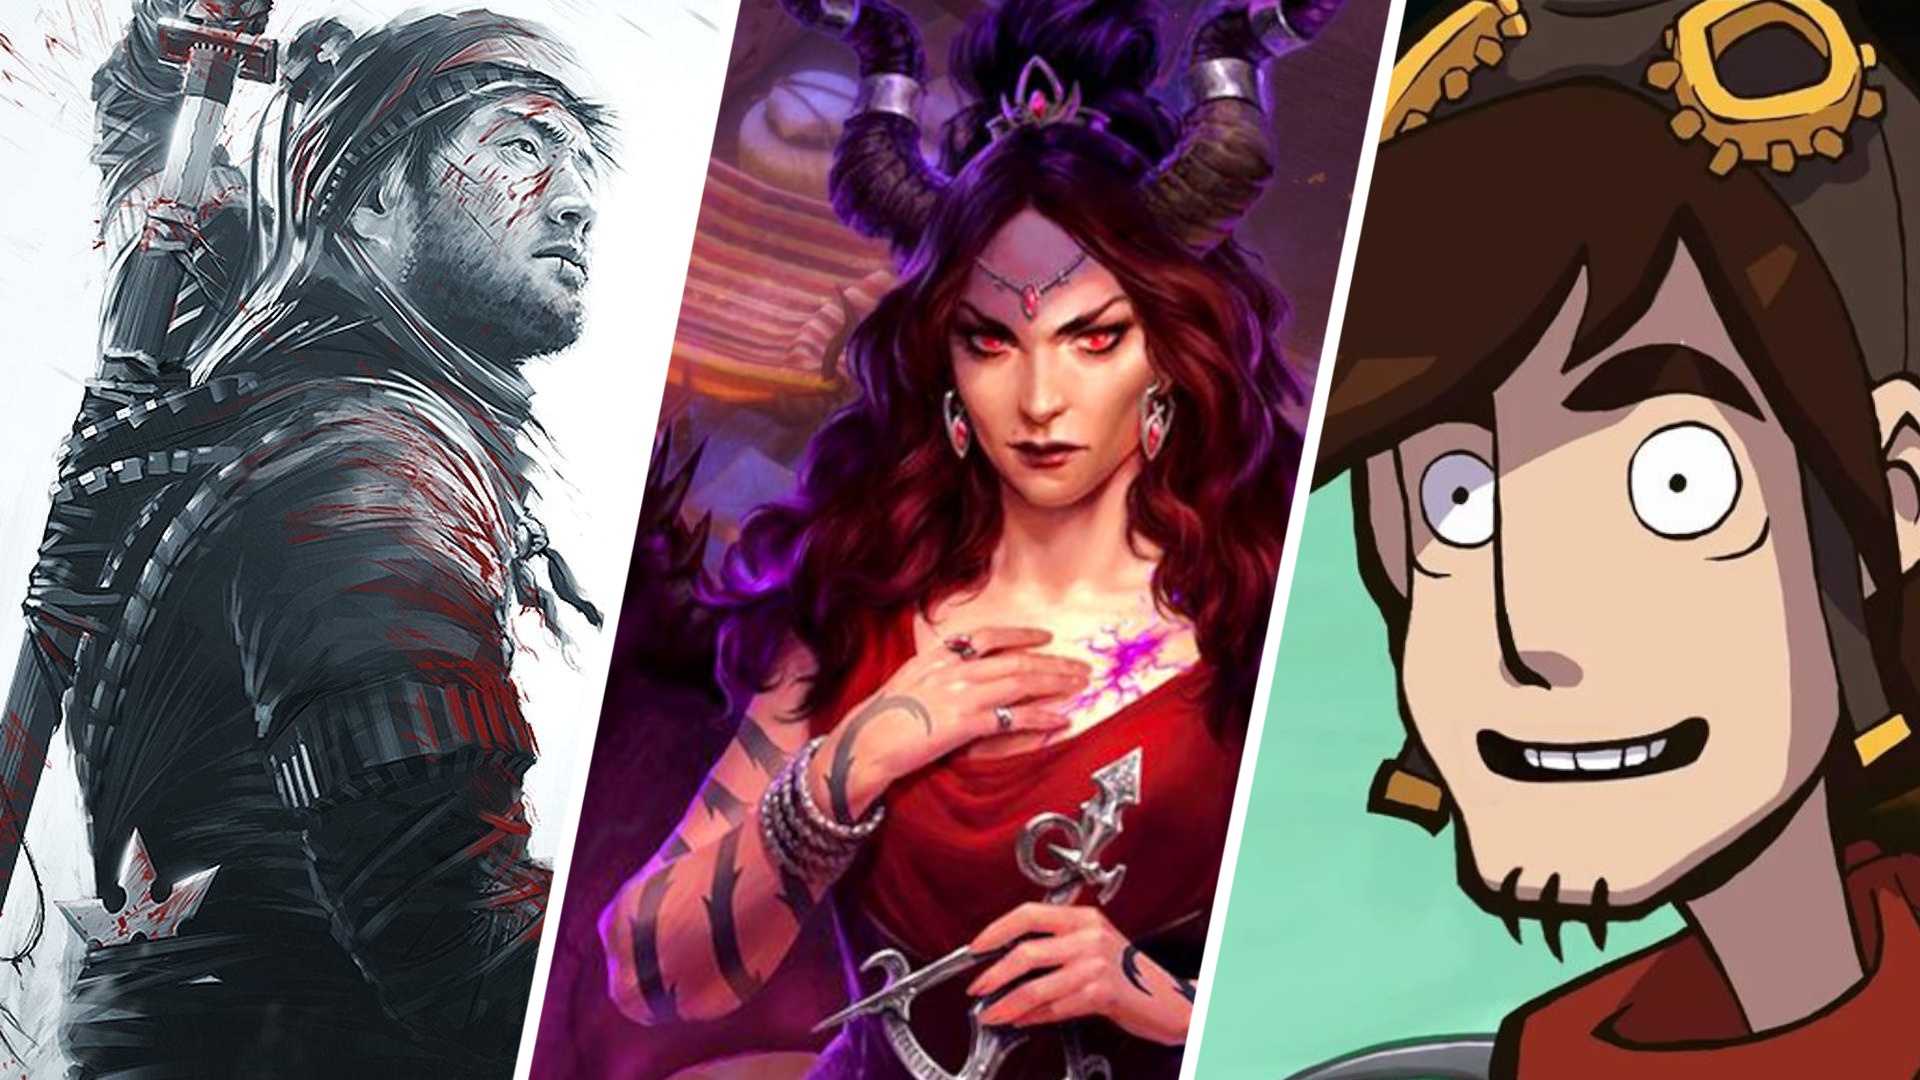 #Midweek Madness – Bei Steam, Epic und Co. gibt's 11 spannende Spiele günstig wie selten zuvor